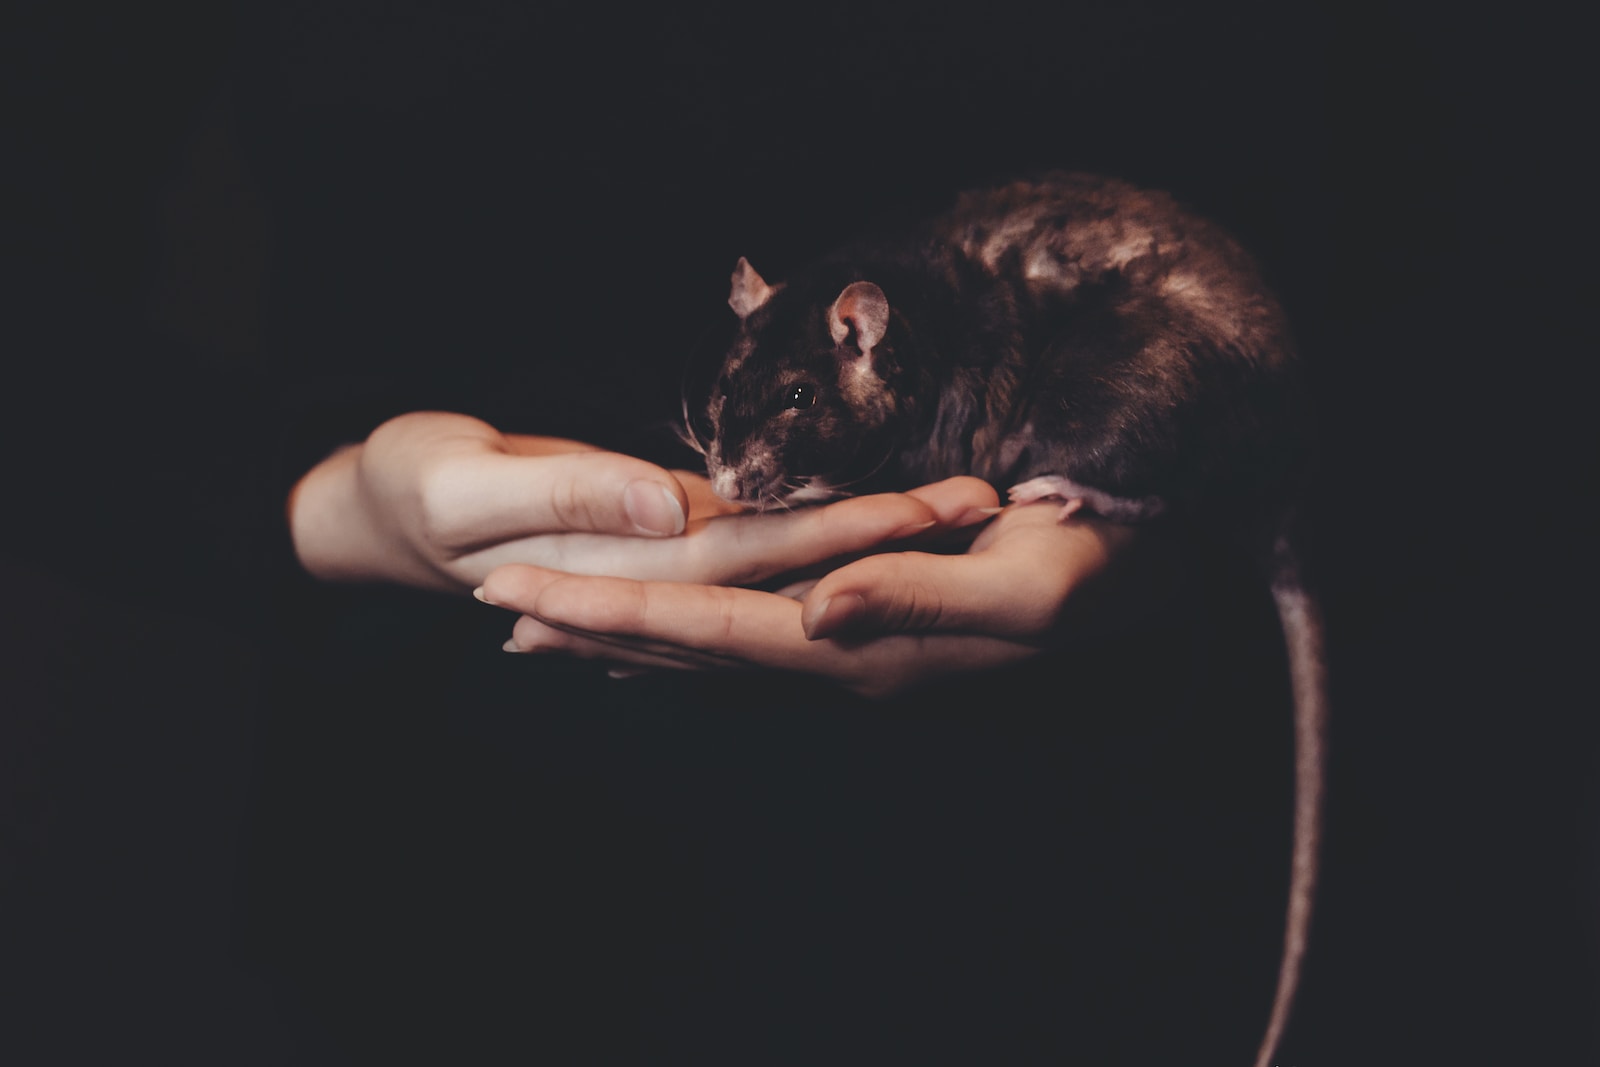 Ratten und Kinder: Ein harmonisches Miteinander fördern